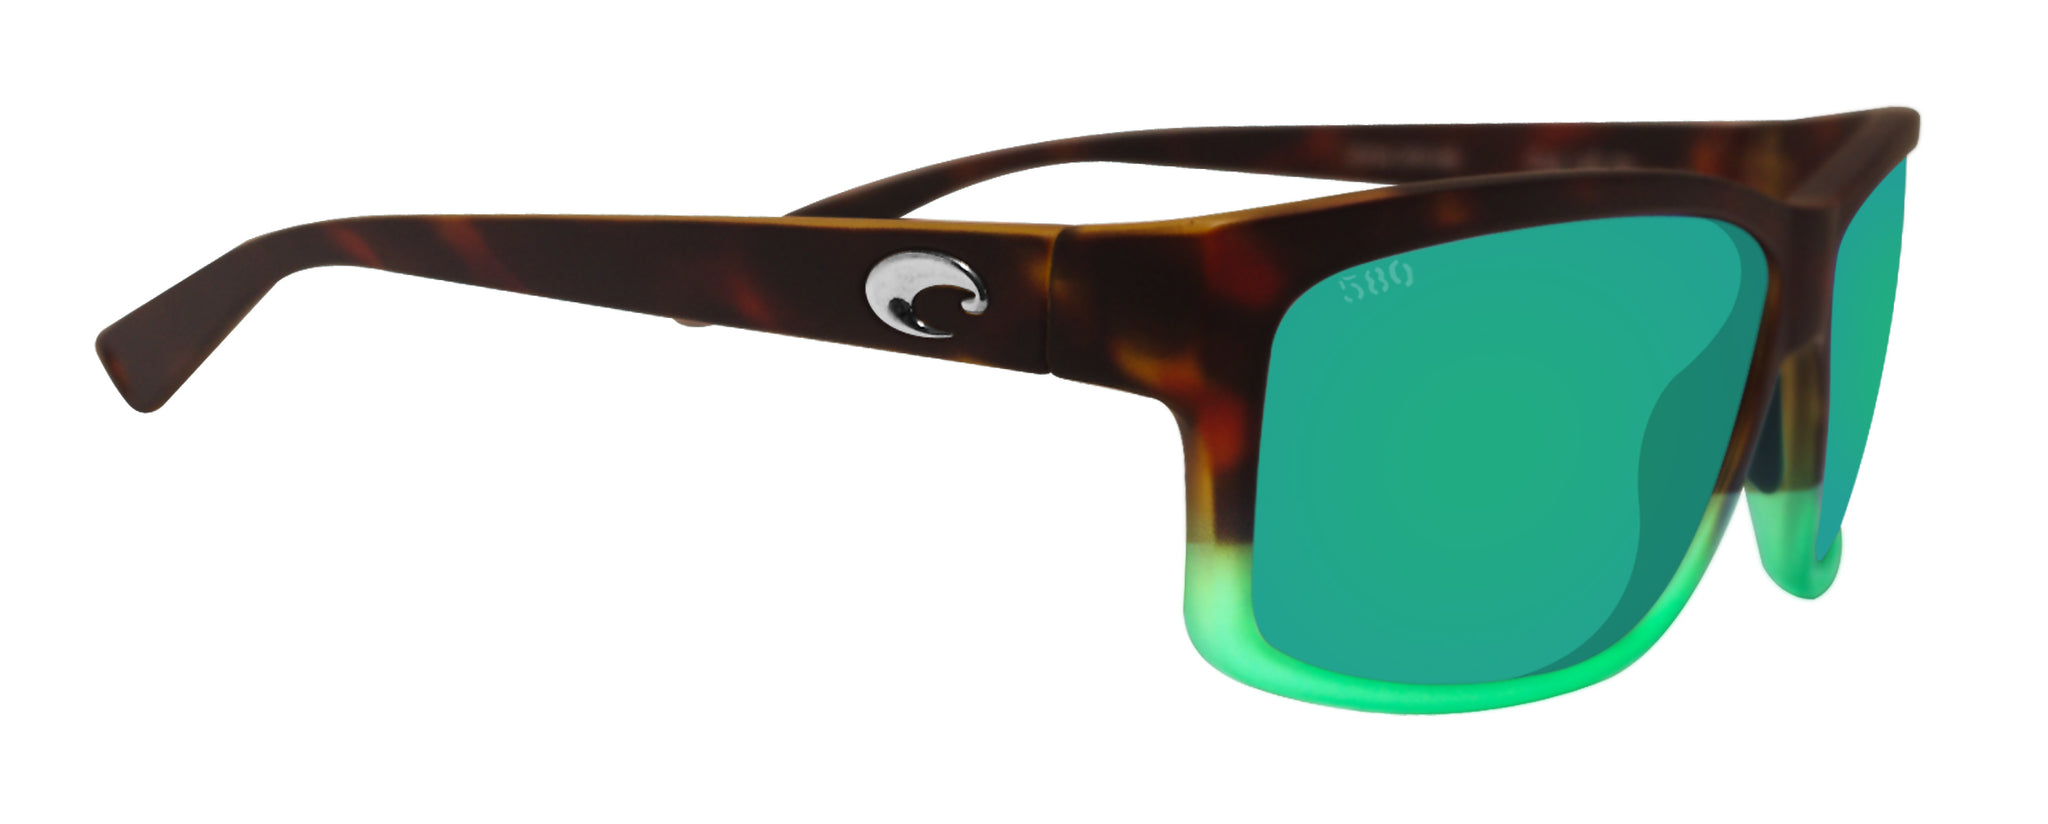 Costa Del Mar sunglasses Cut matte tortuga fade frame green mirror 580 –  sasy420